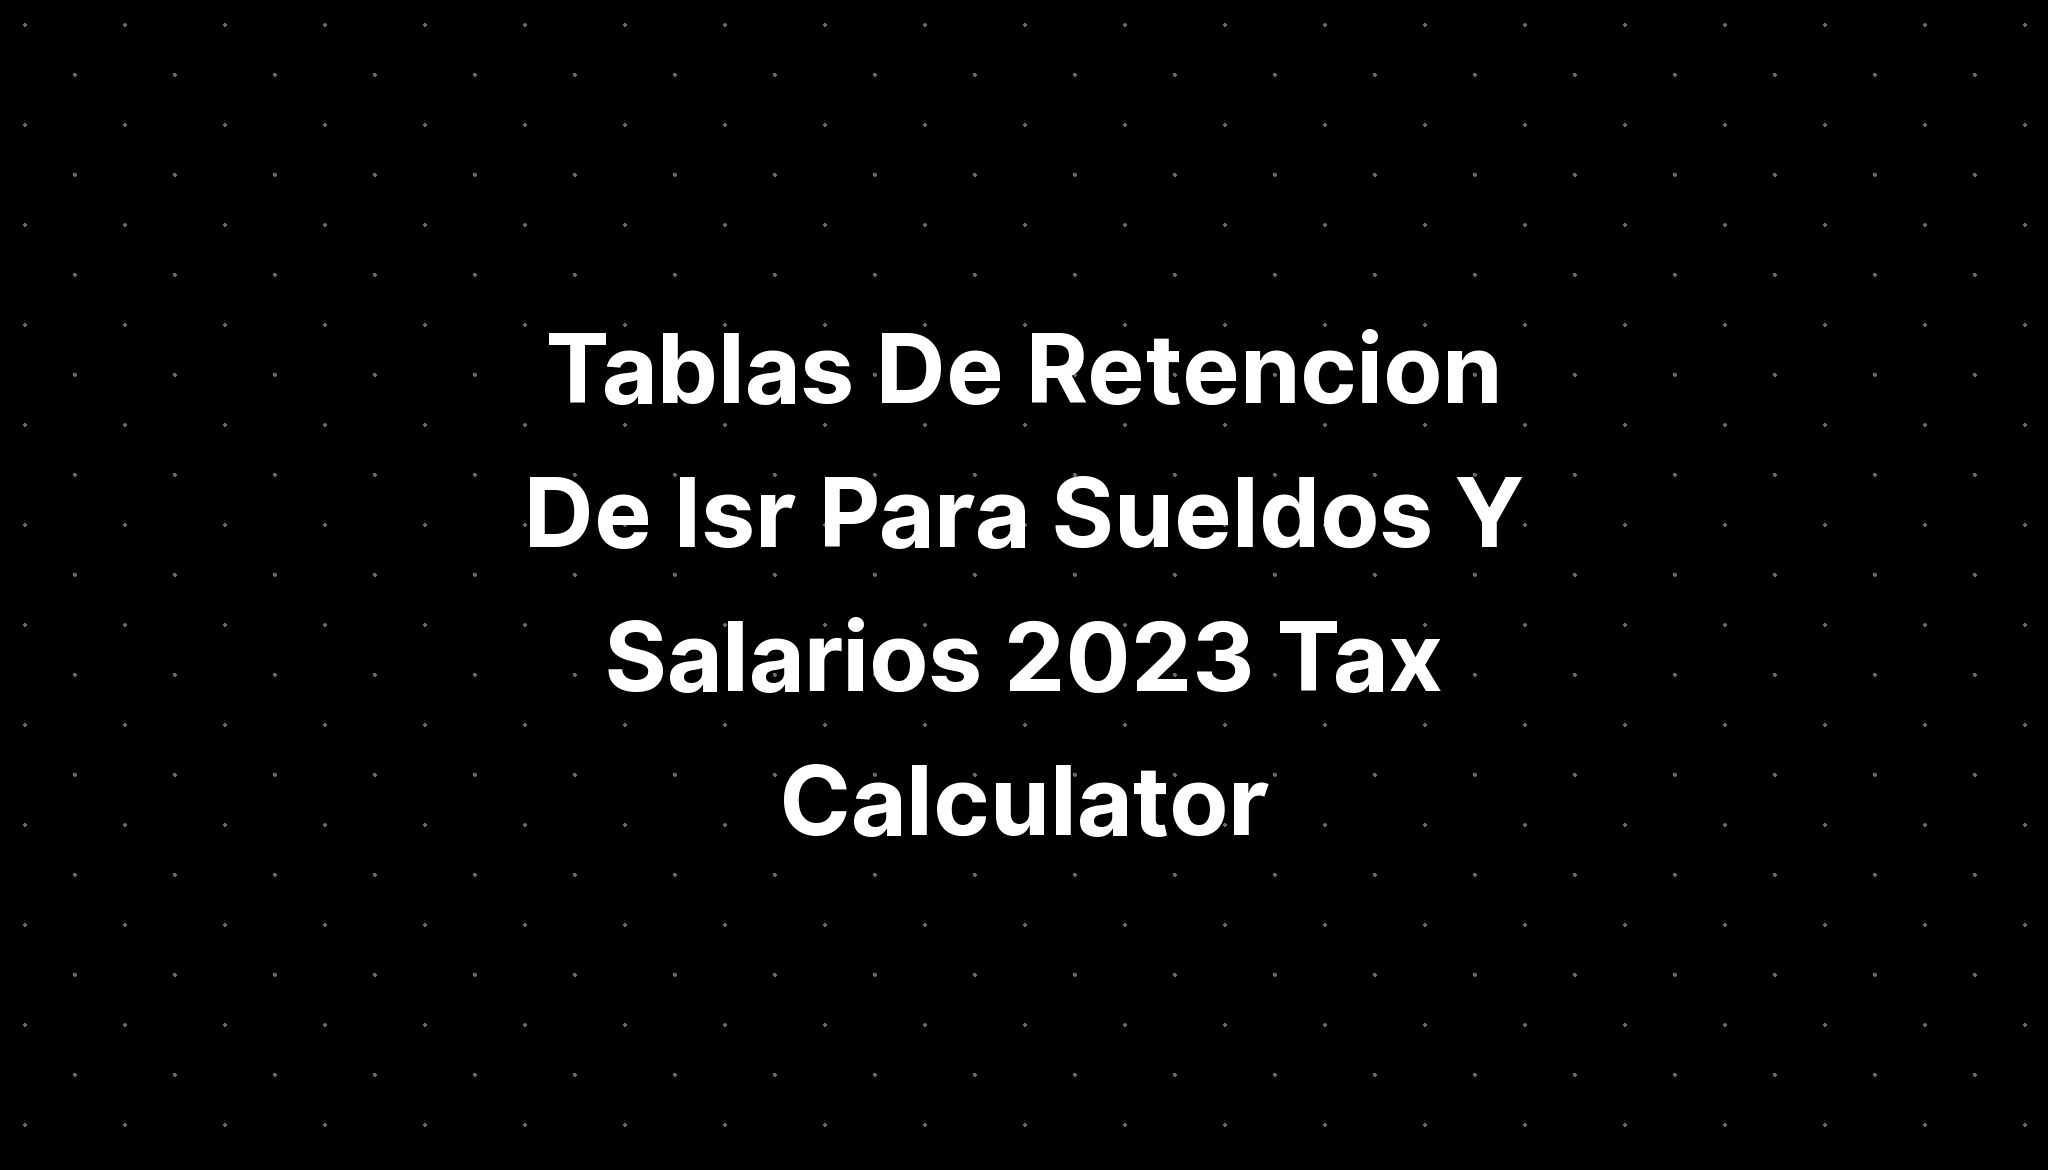 Tablas De Retencion De Isr Para Sueldos Y Salarios 2023 Tax Calculator Imagesee 9273